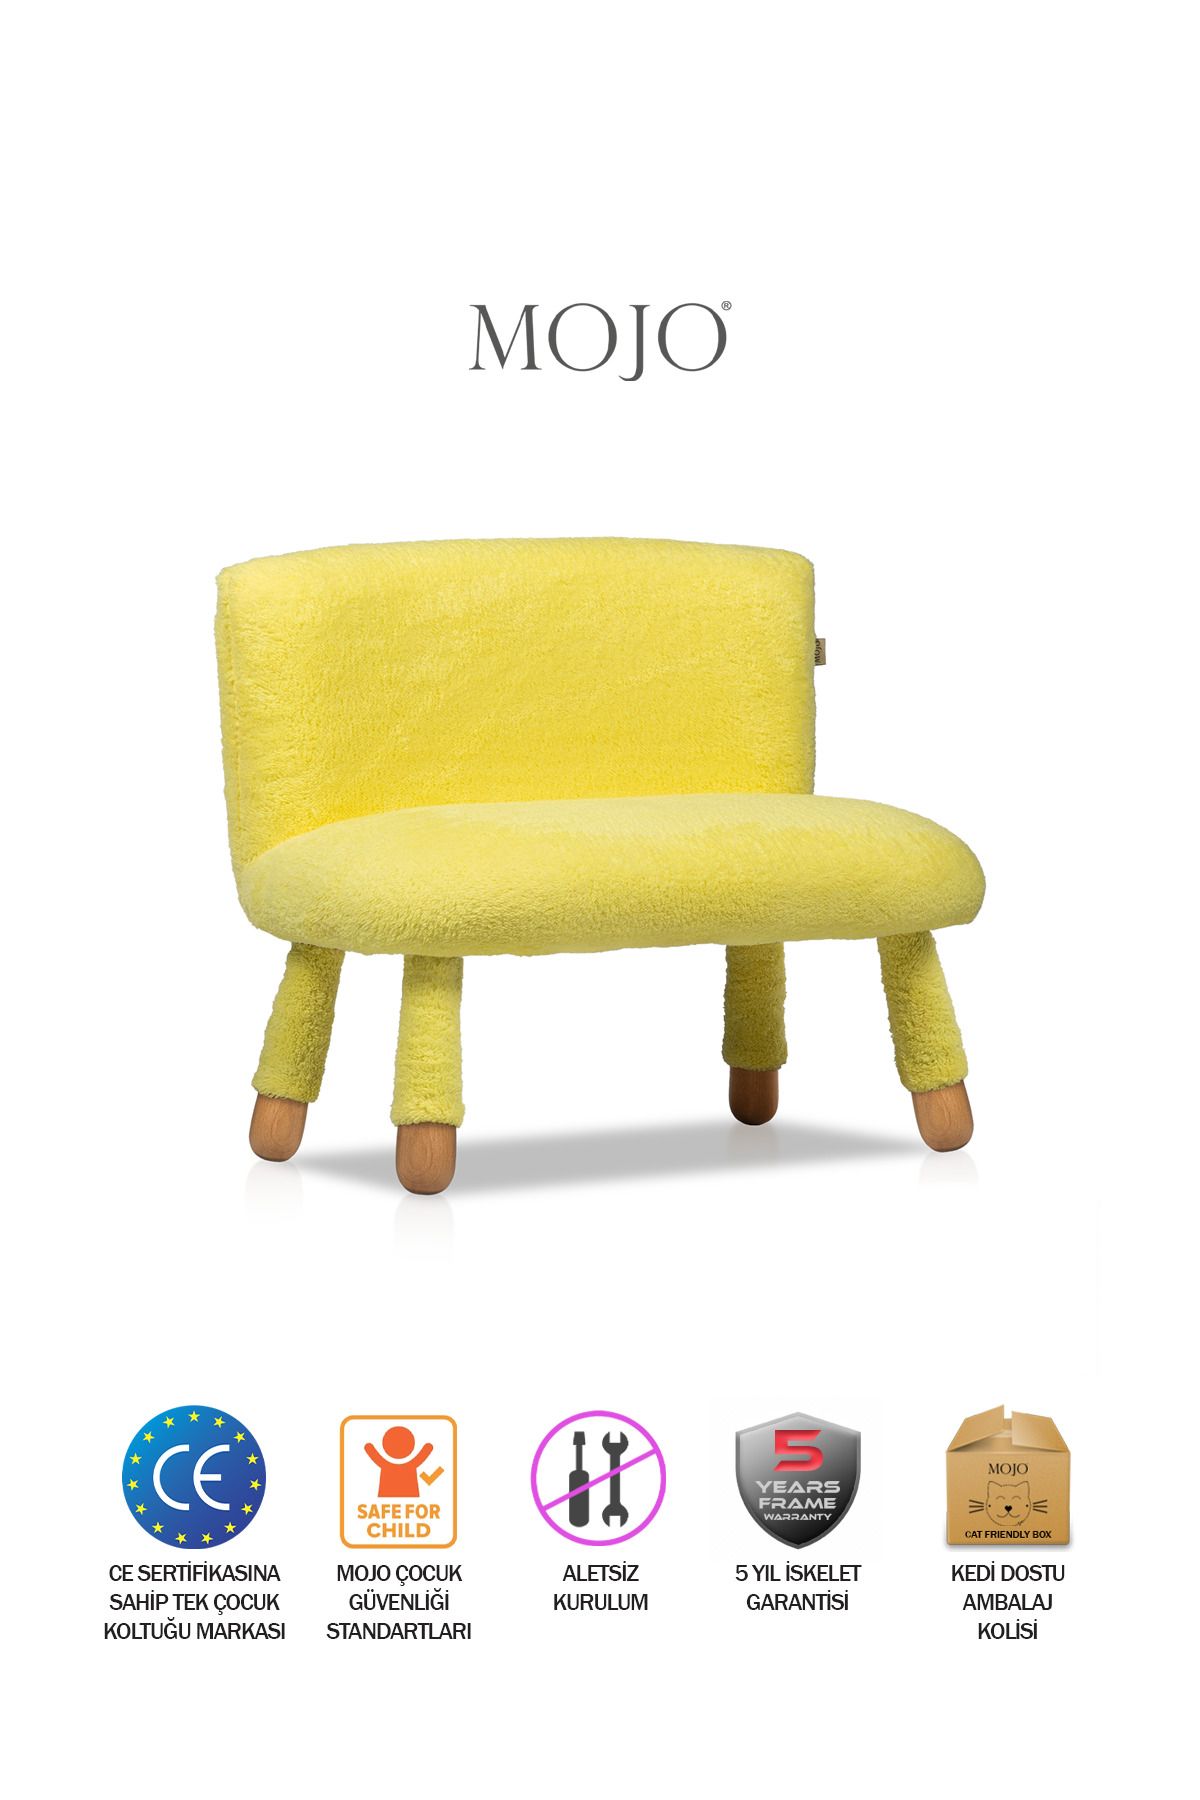 MOJO Mio İkili Çocuk Sandalyesi Sarı